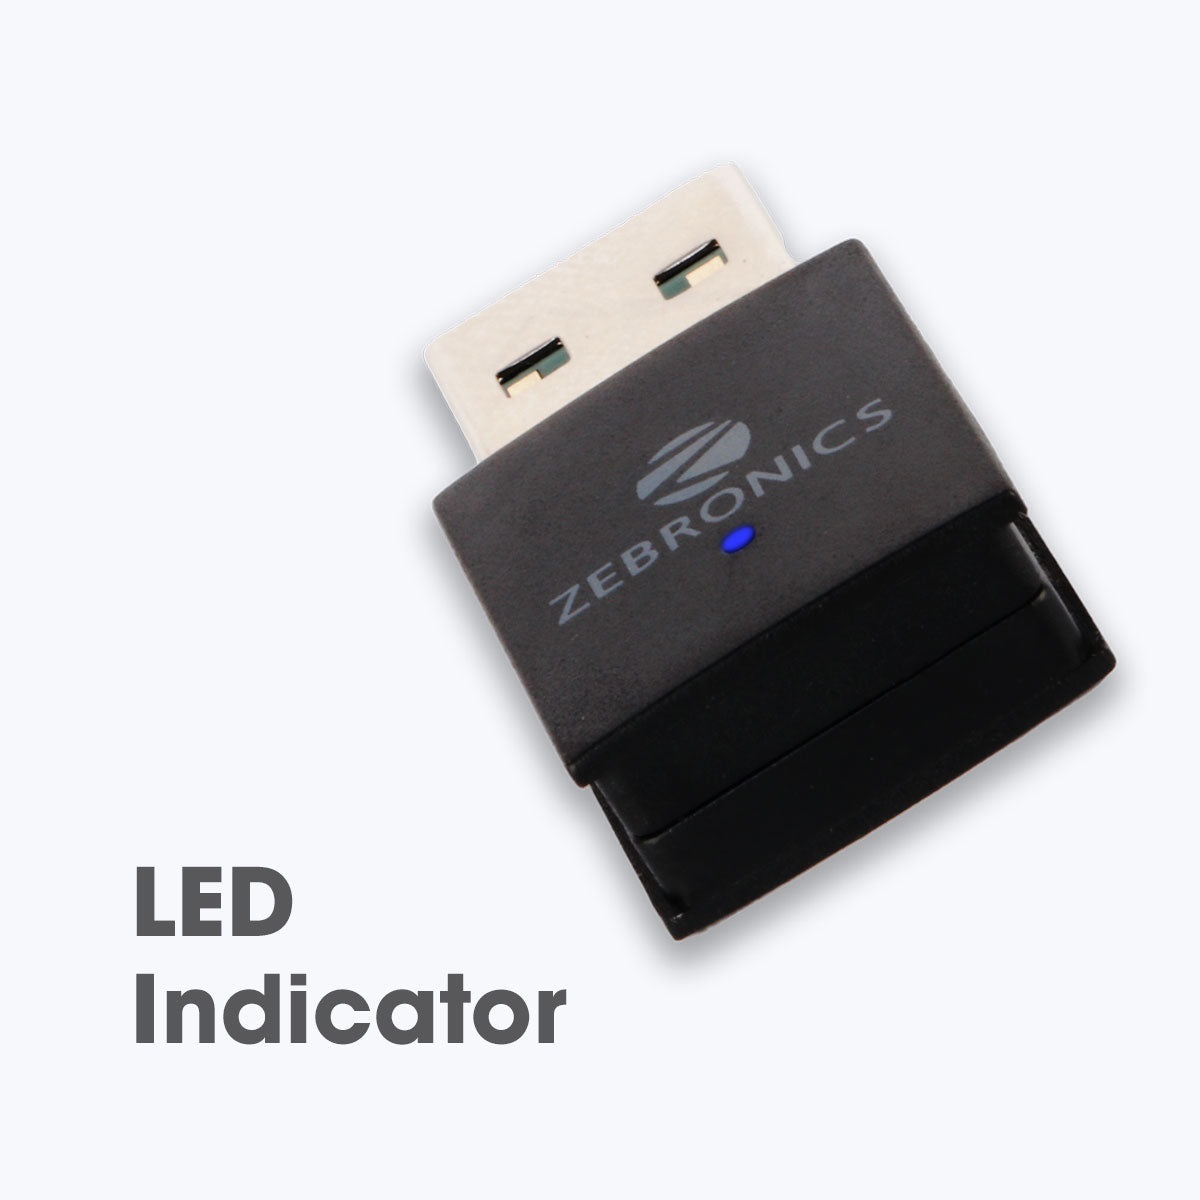 ZEB-USB150WFBT- WiFi USB Mini Adapter